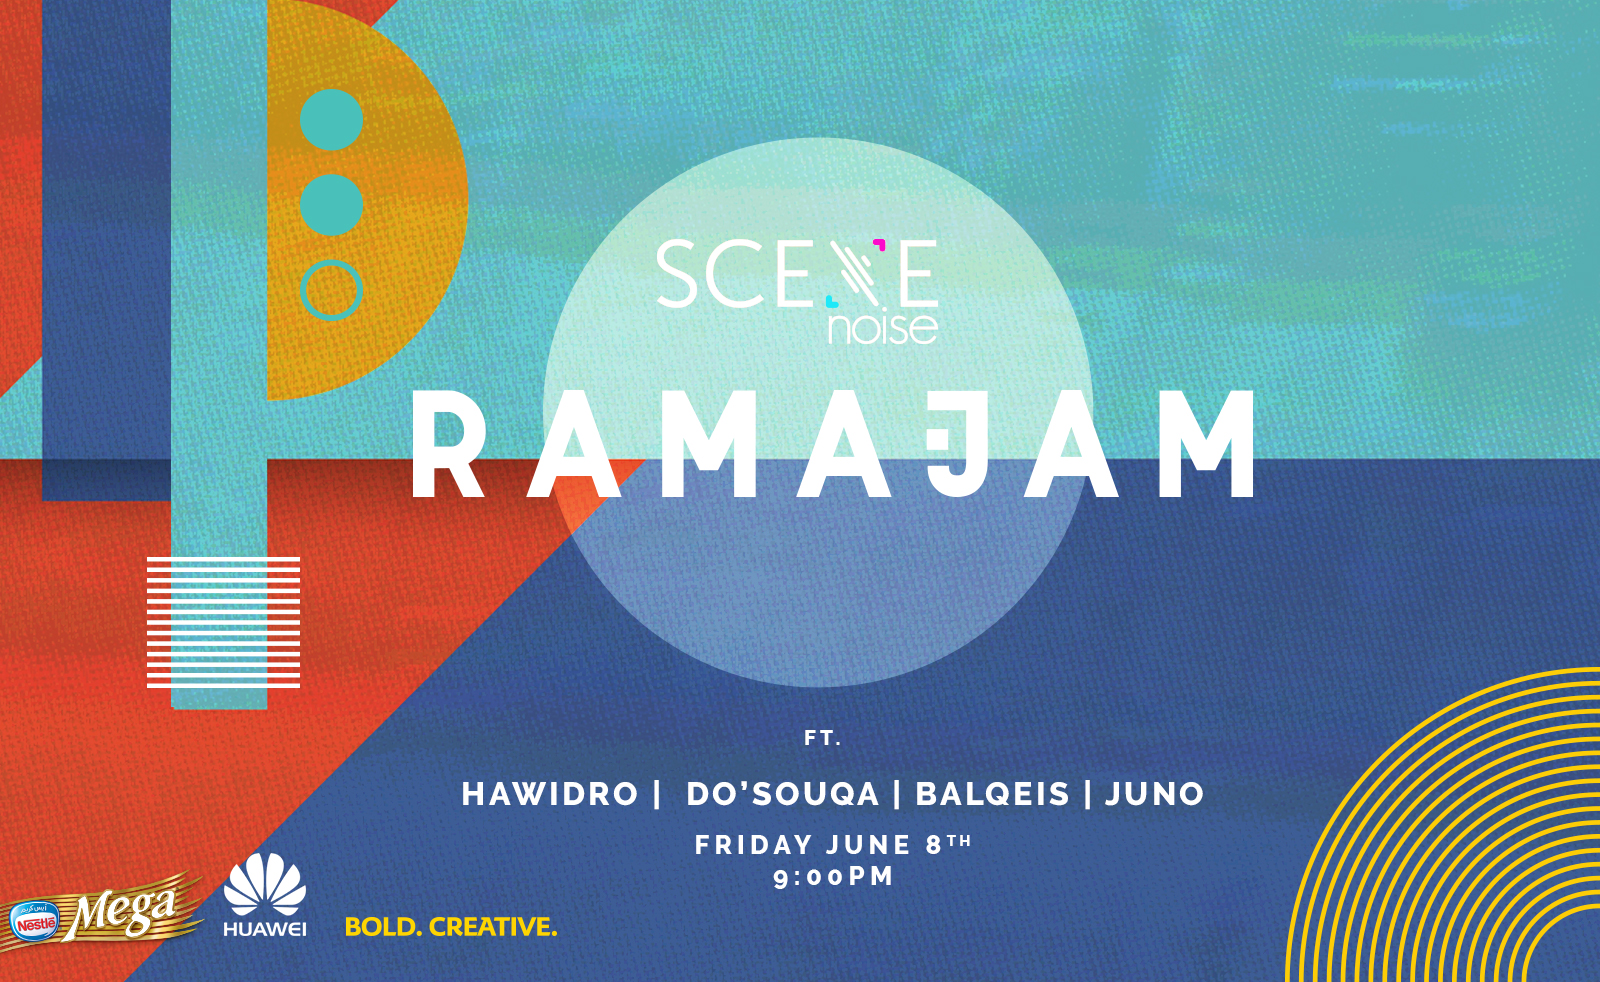 Ramajam: Remixing the Ramadan Suhour